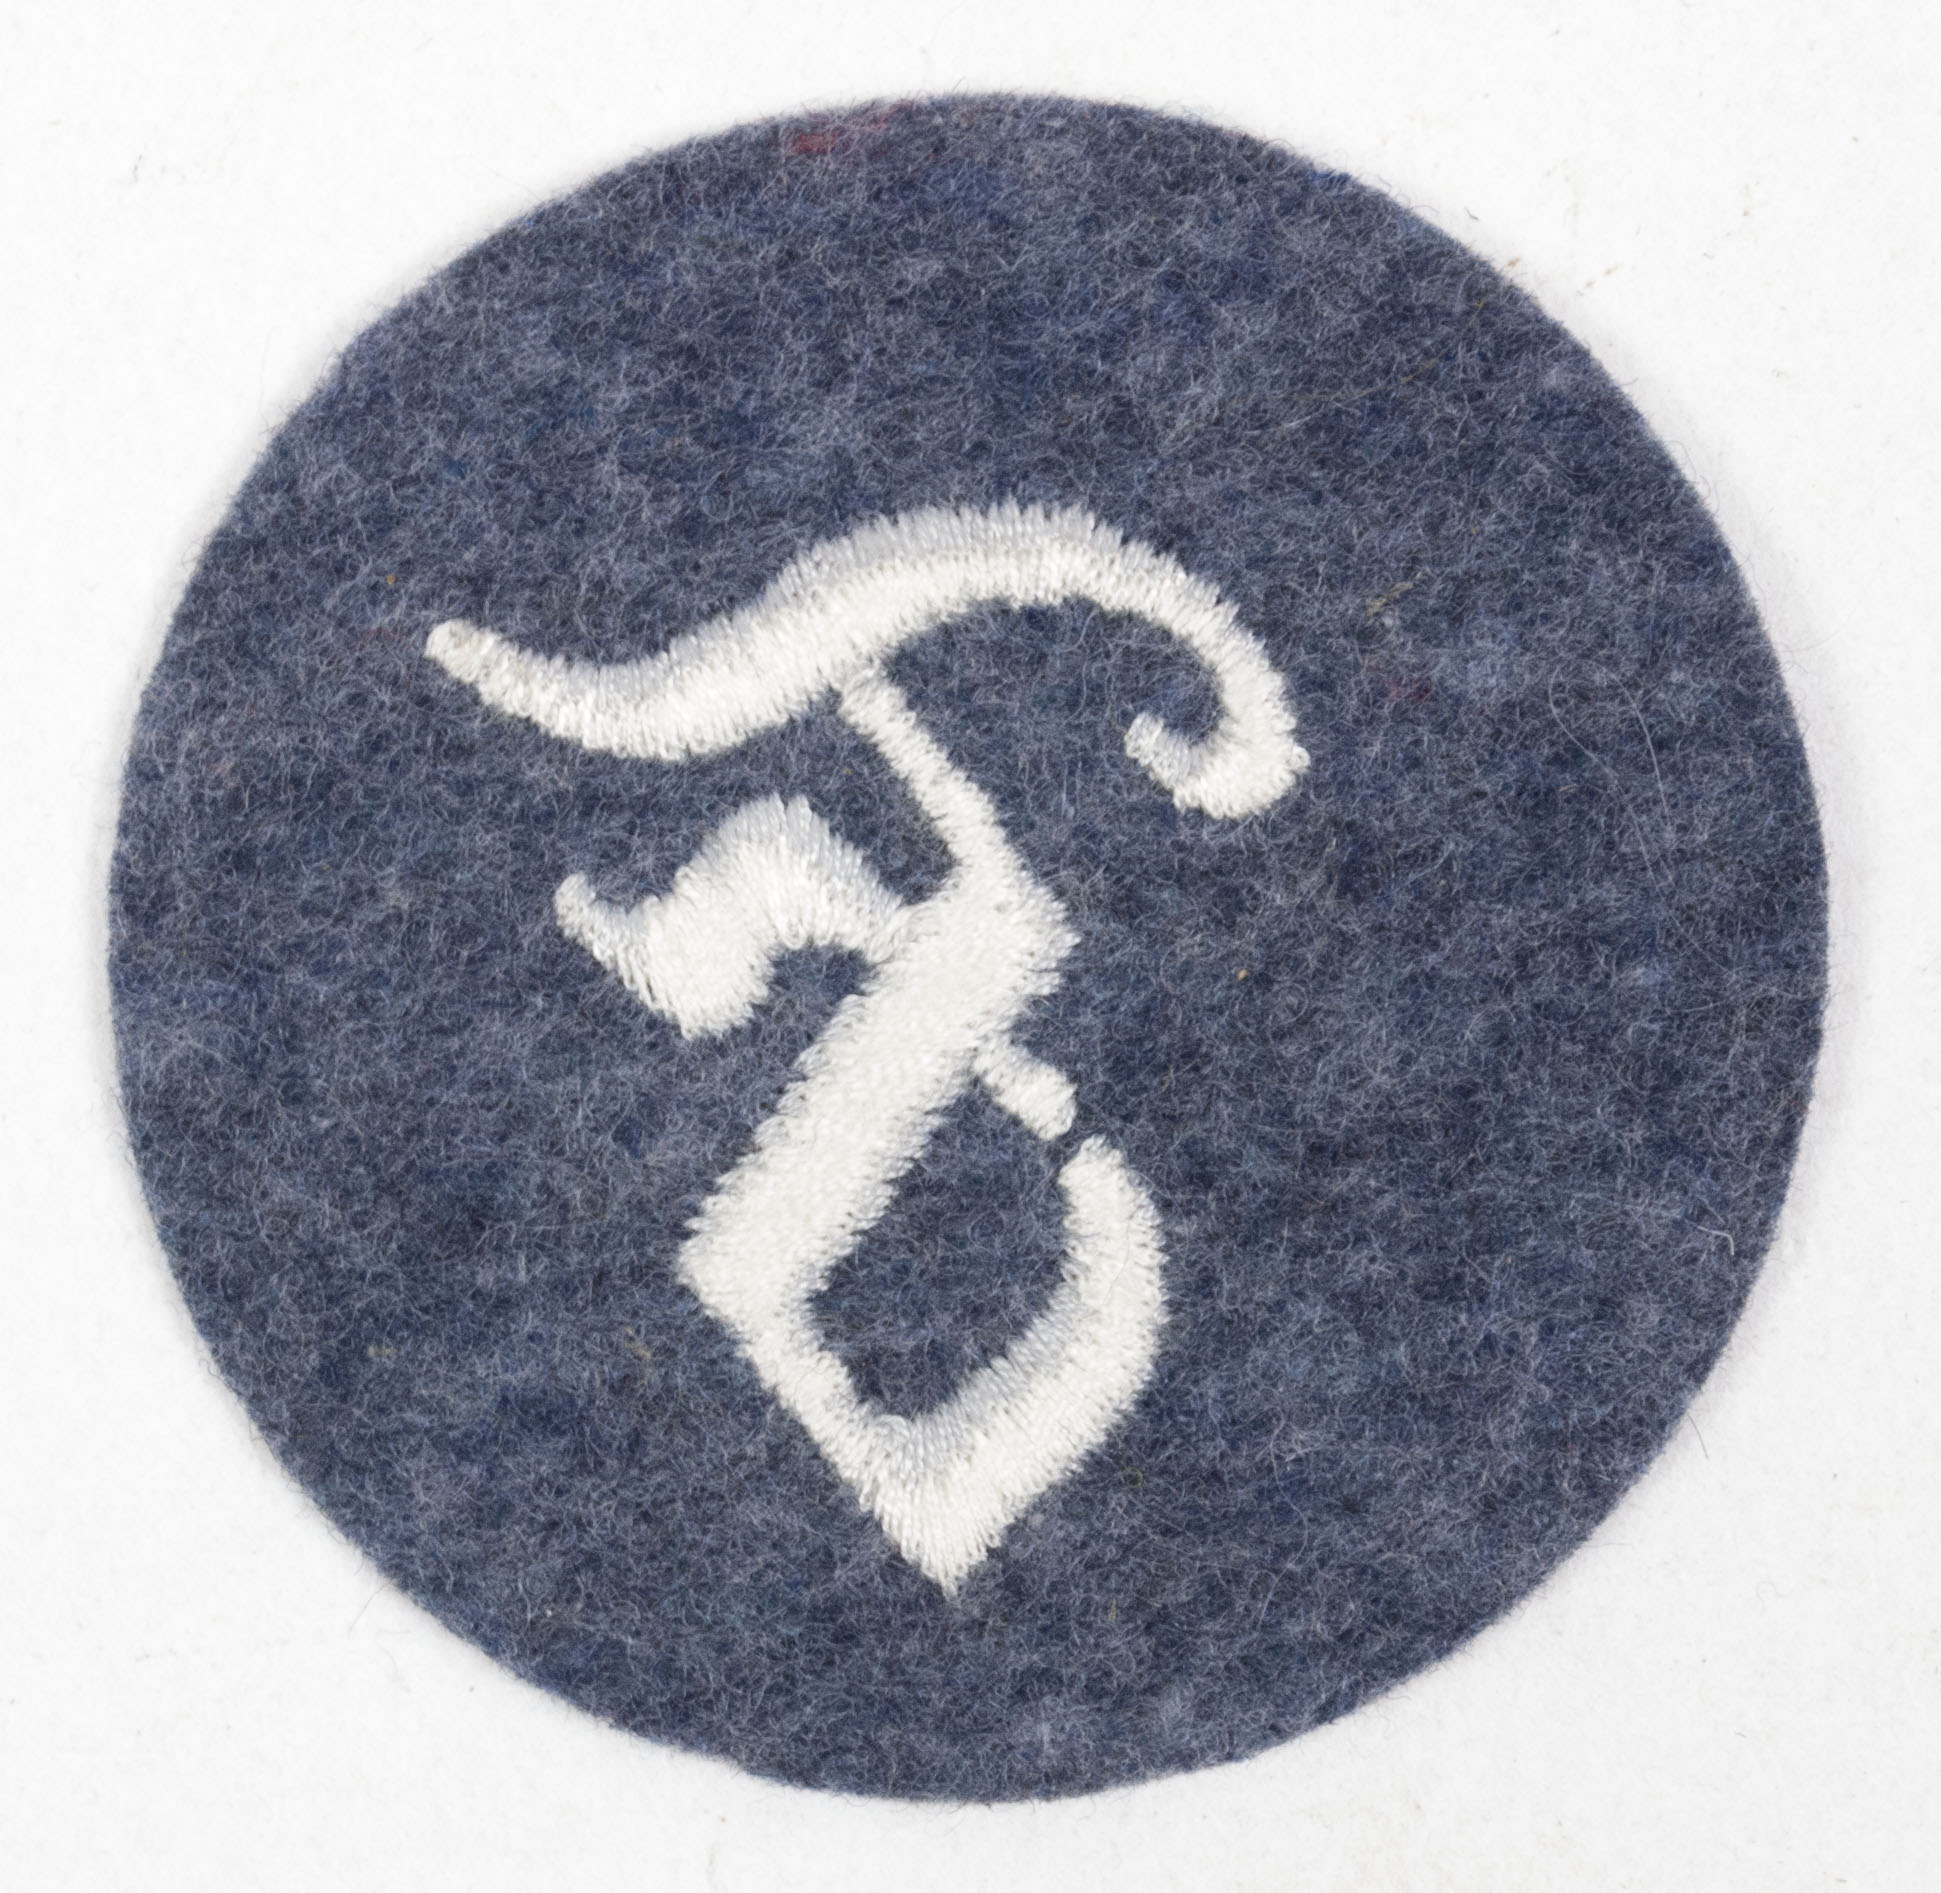 Luftwaffe Fuerwerker Personnel Trade Badge